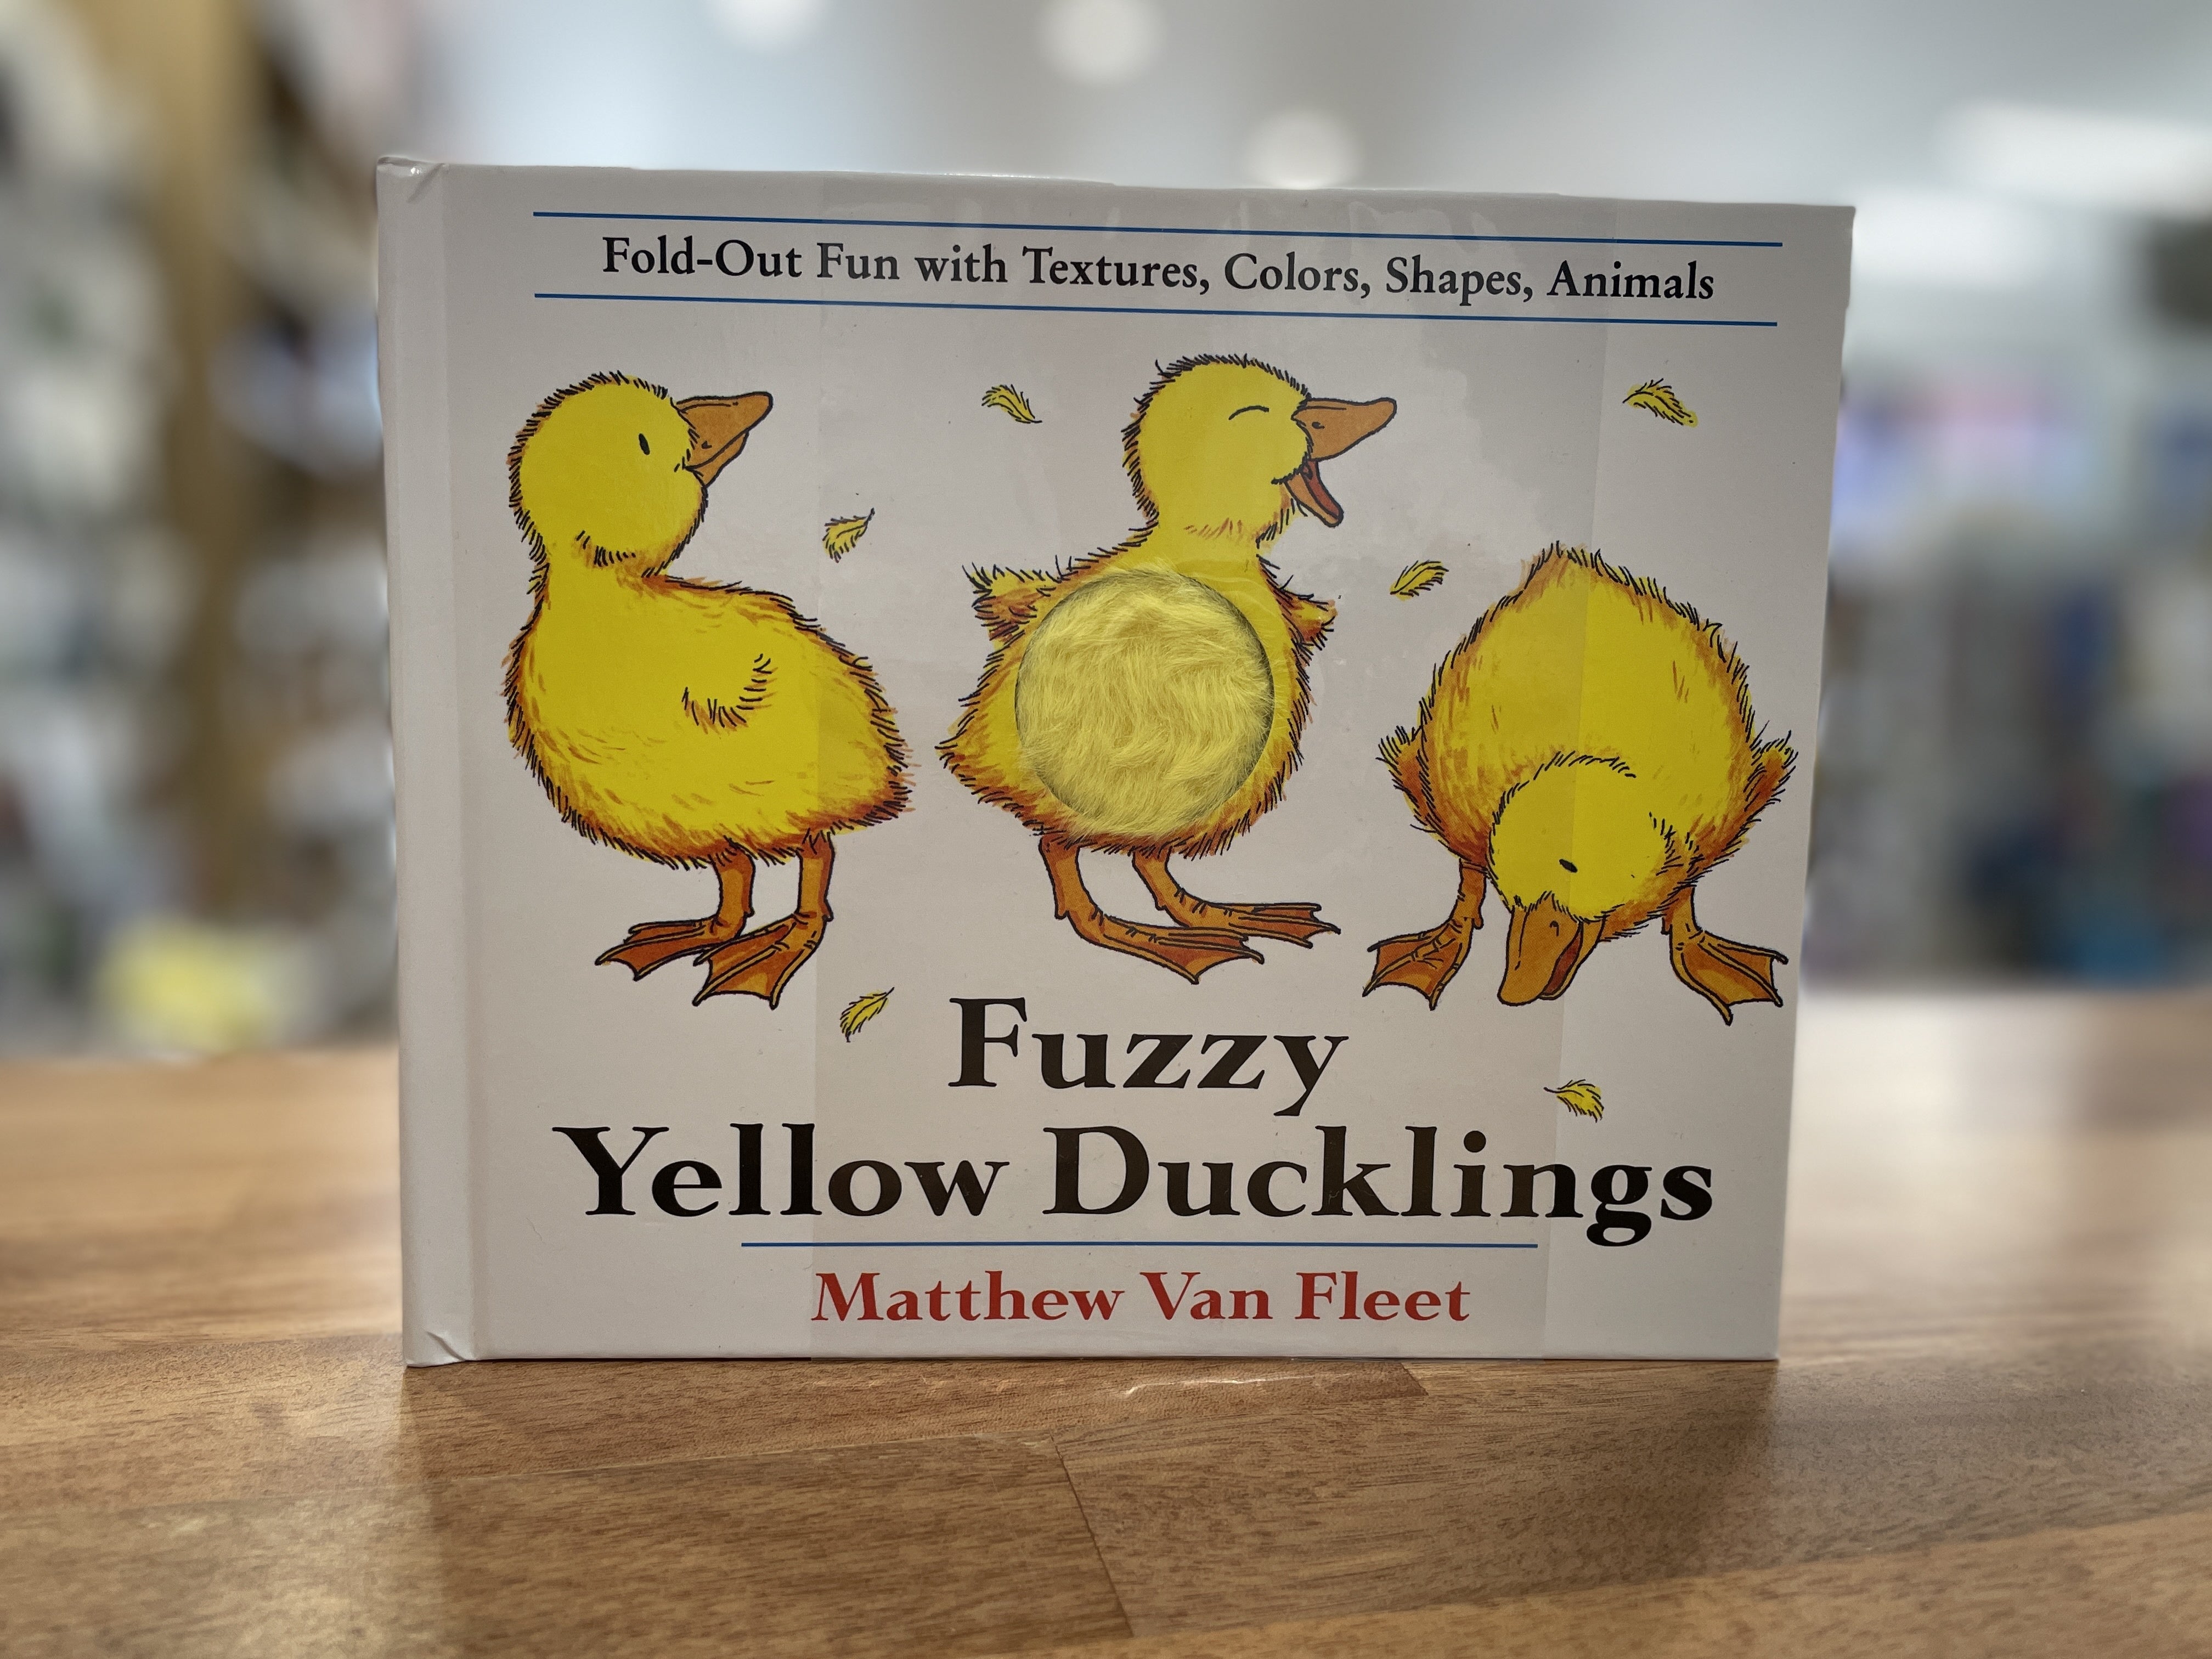 Sensory　Ducklings　The　Fuzzy　Fleet　–　Matthew　Yellow　Van　by　Studio